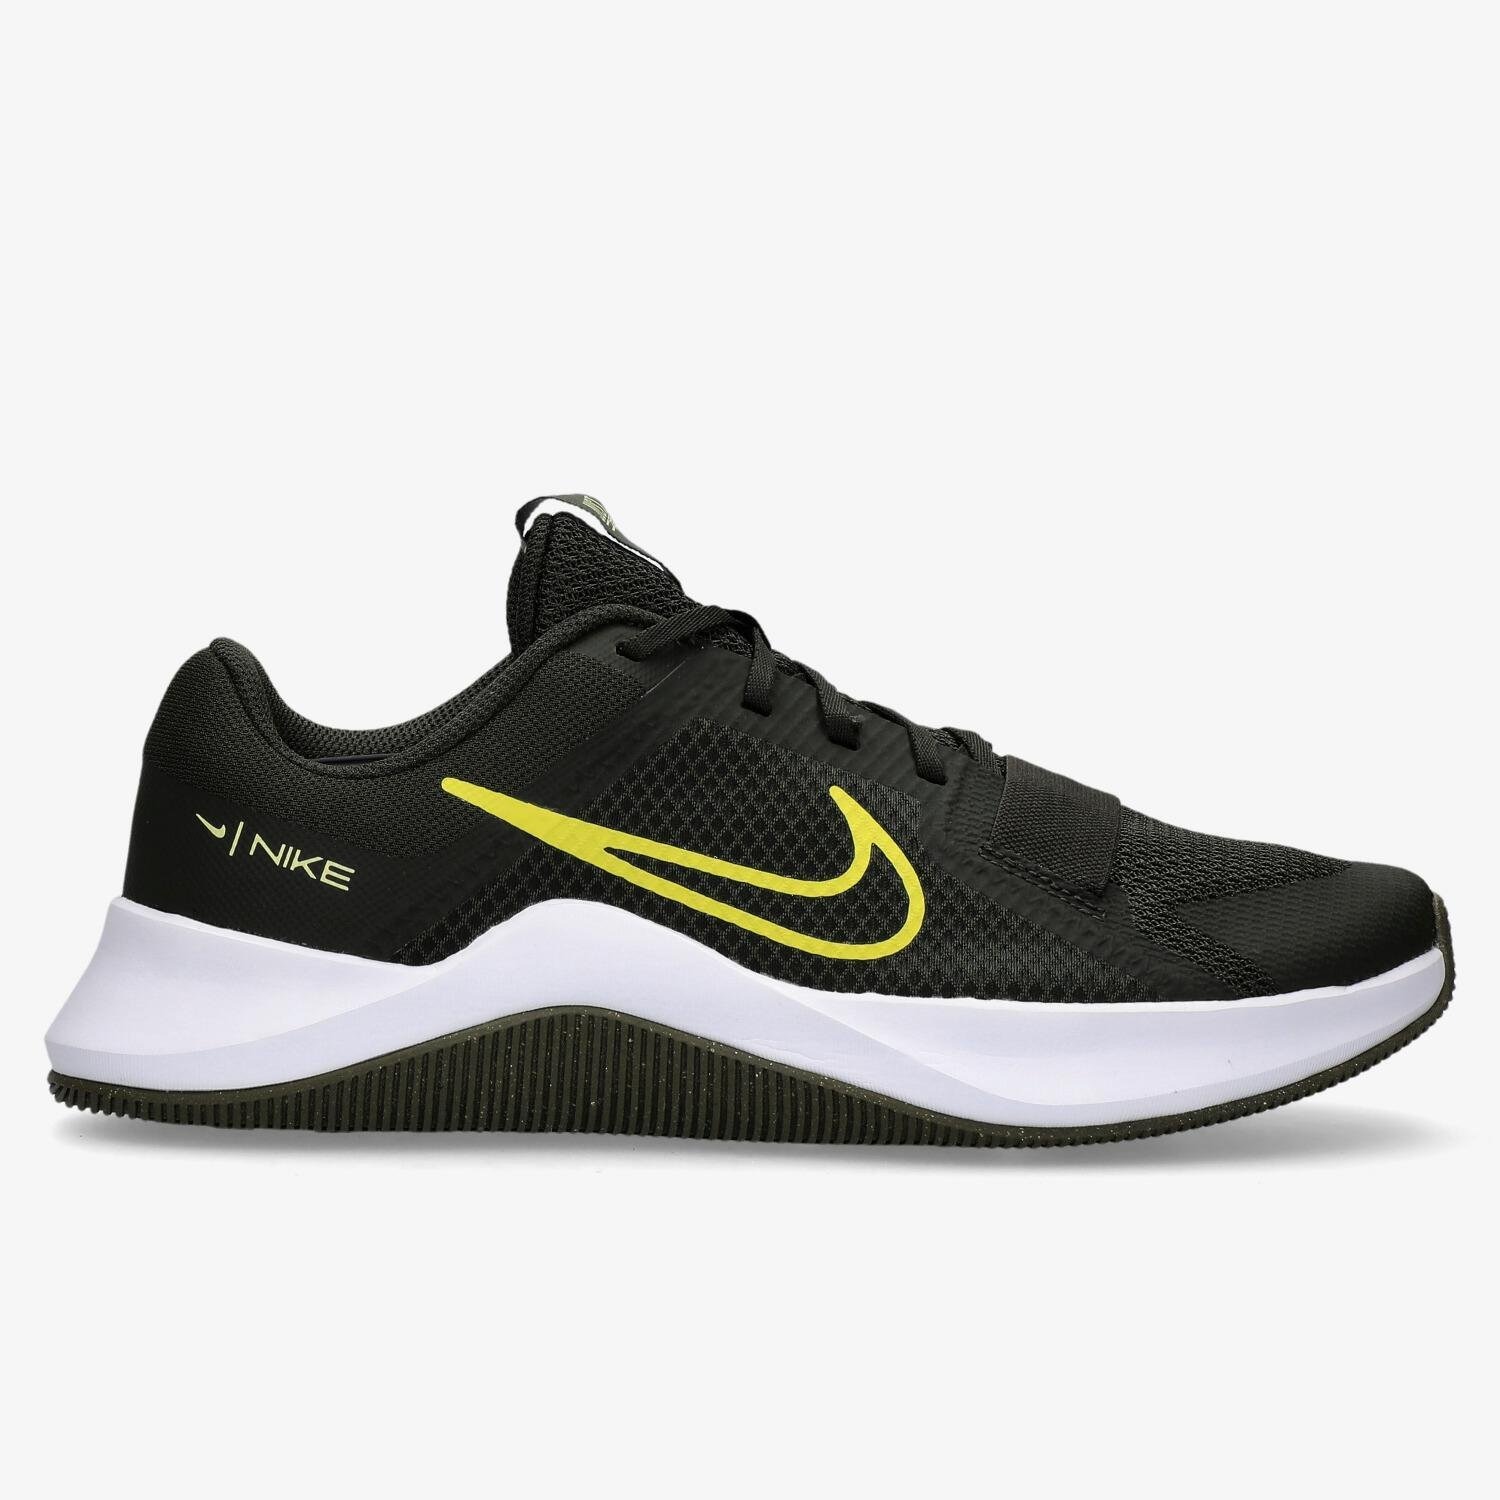 Nike Nike mc trainer 2 sportschoenen zwart/wit heren heren